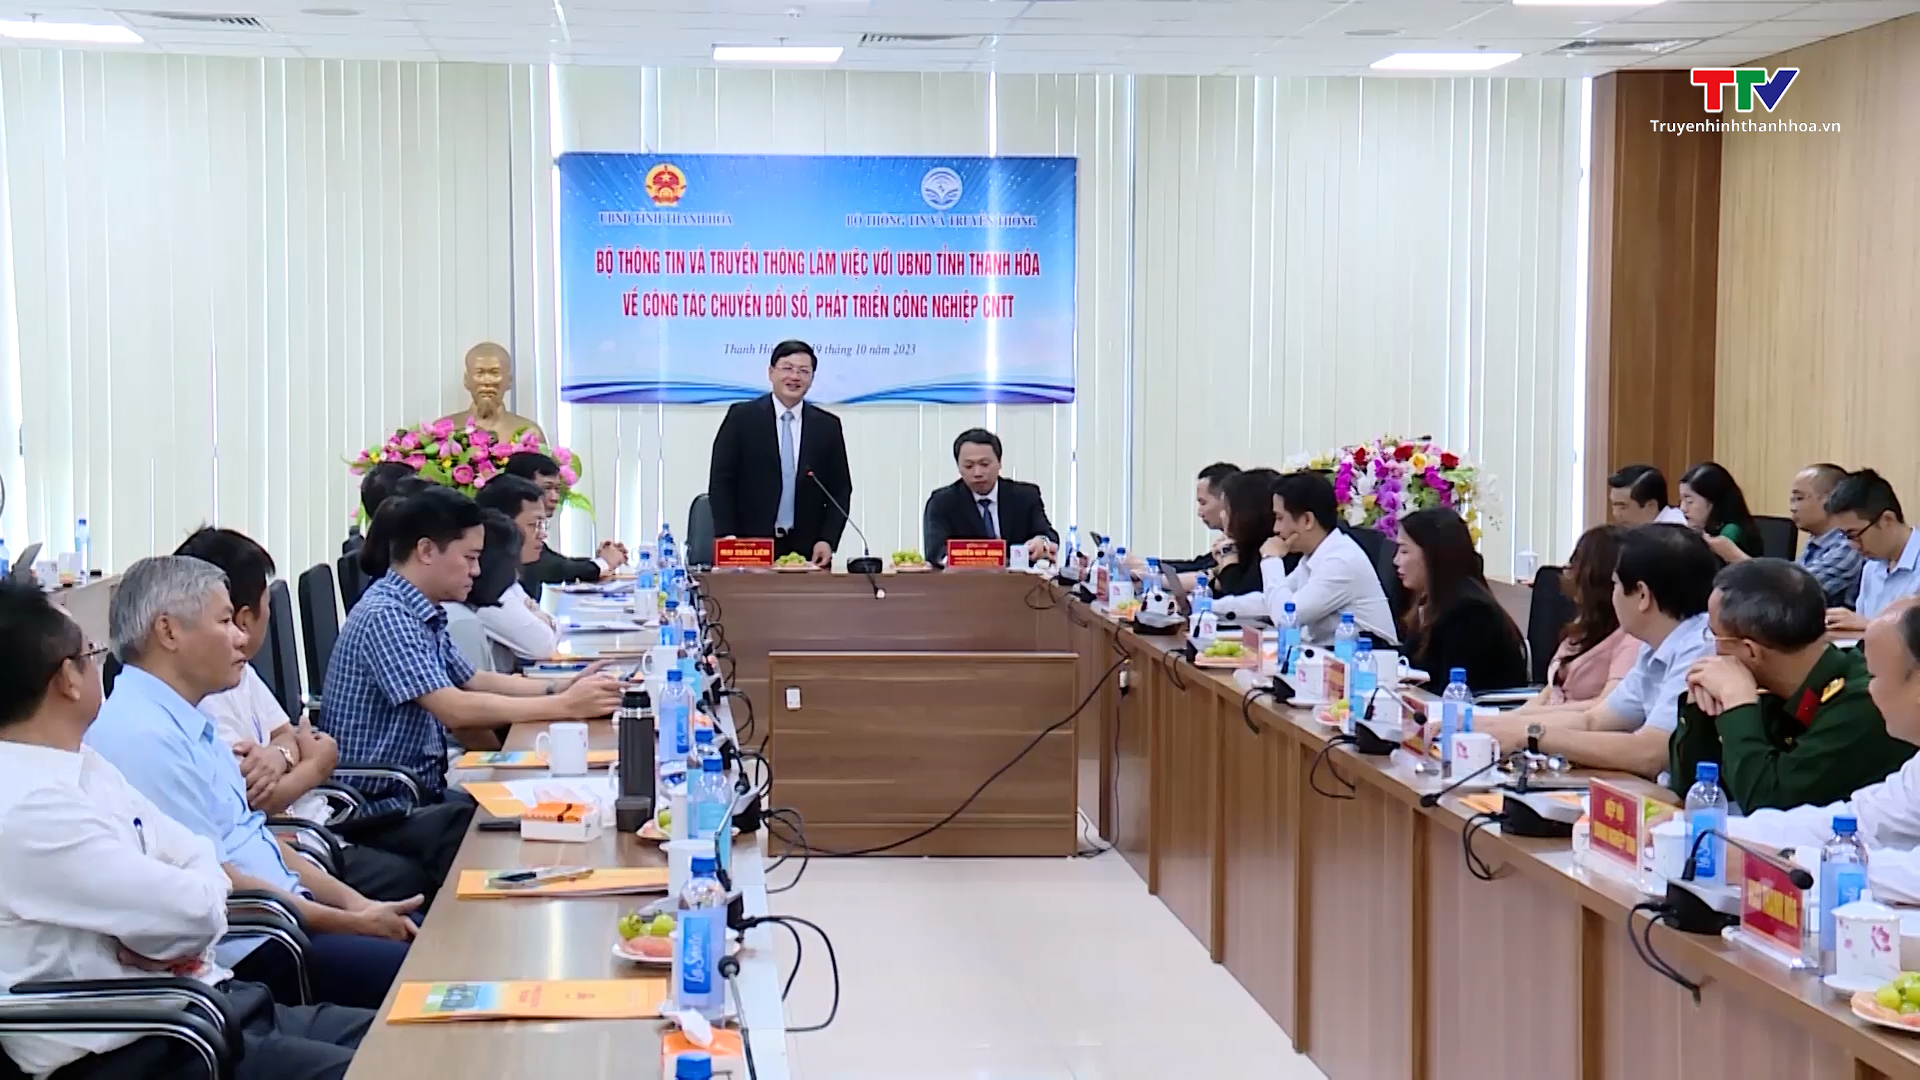 Bộ Thông tin và Truyền thông làm việc với UBND tỉnh Thanh Hóa về công tác chuyển đổi số - Ảnh 3.